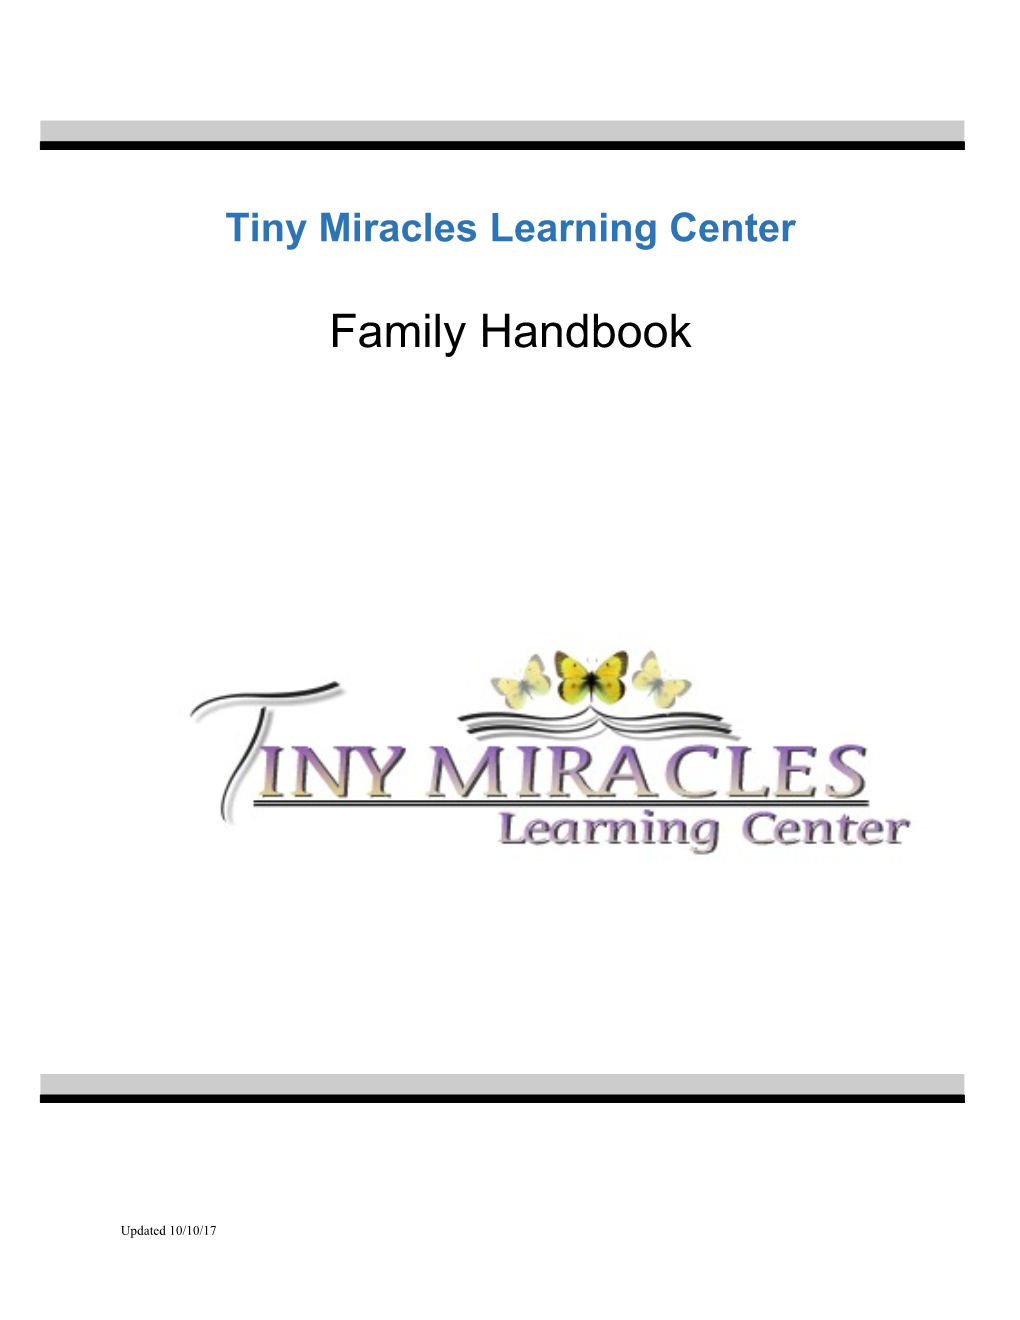 Family Handbook - Center Based